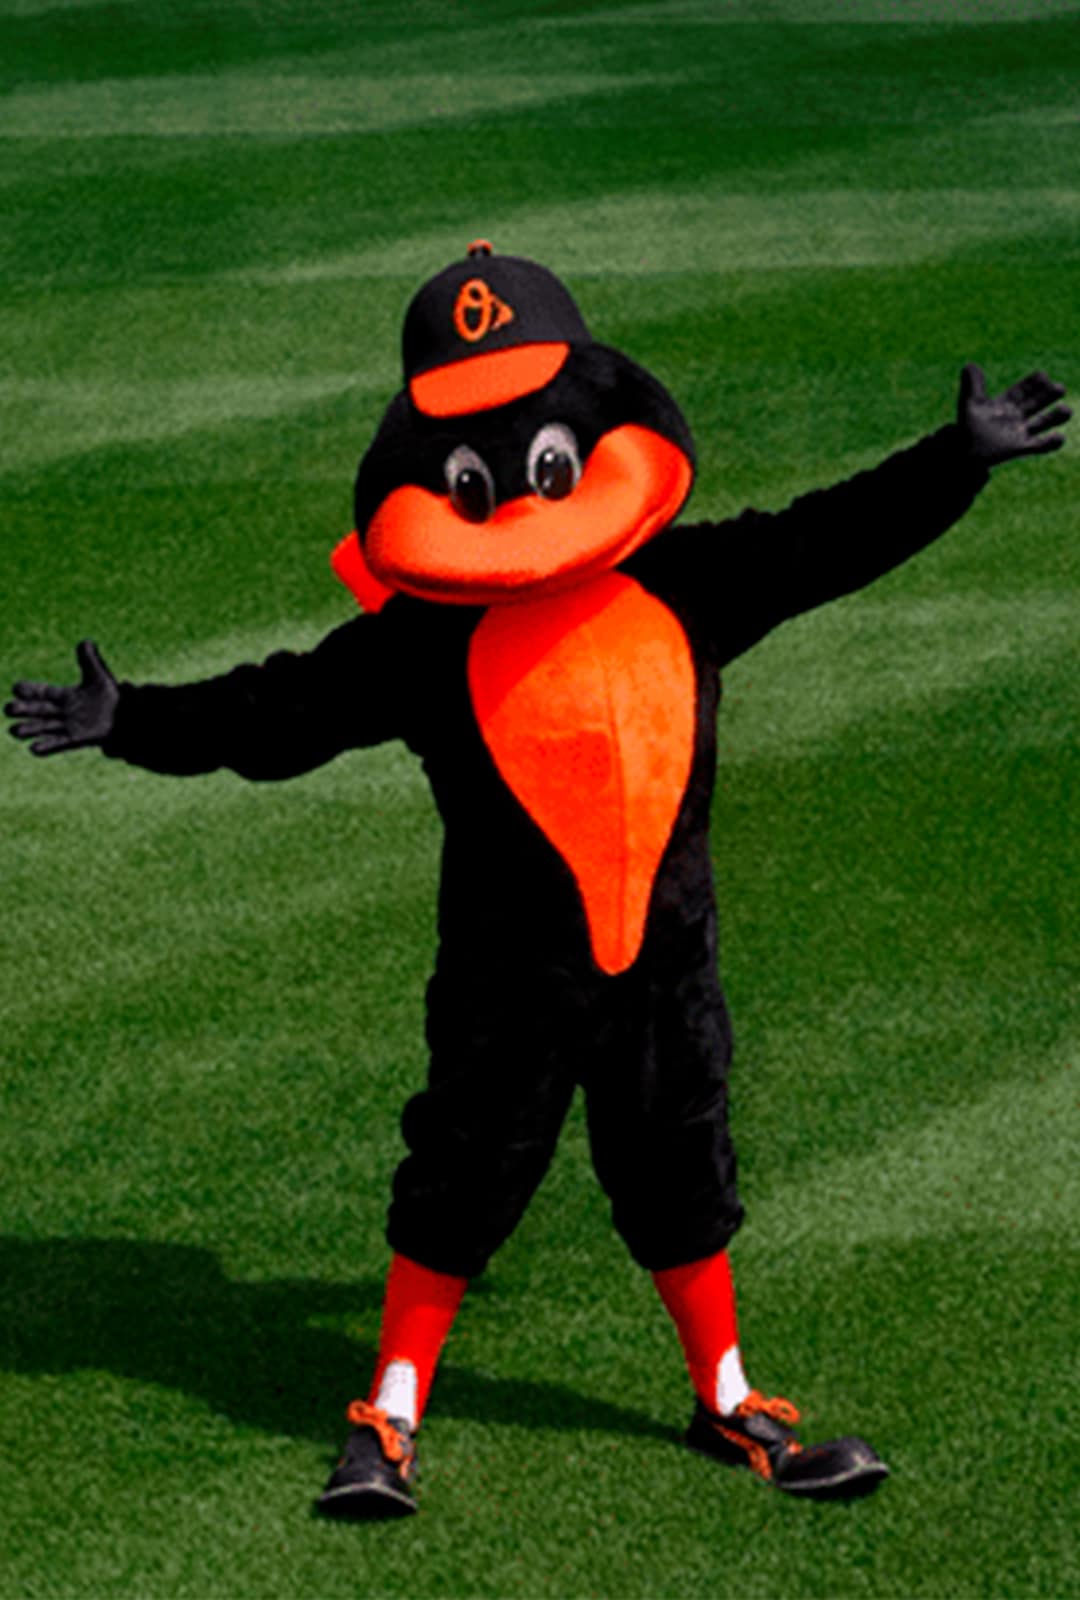 Oriole Bird of the Baltimore Orioles